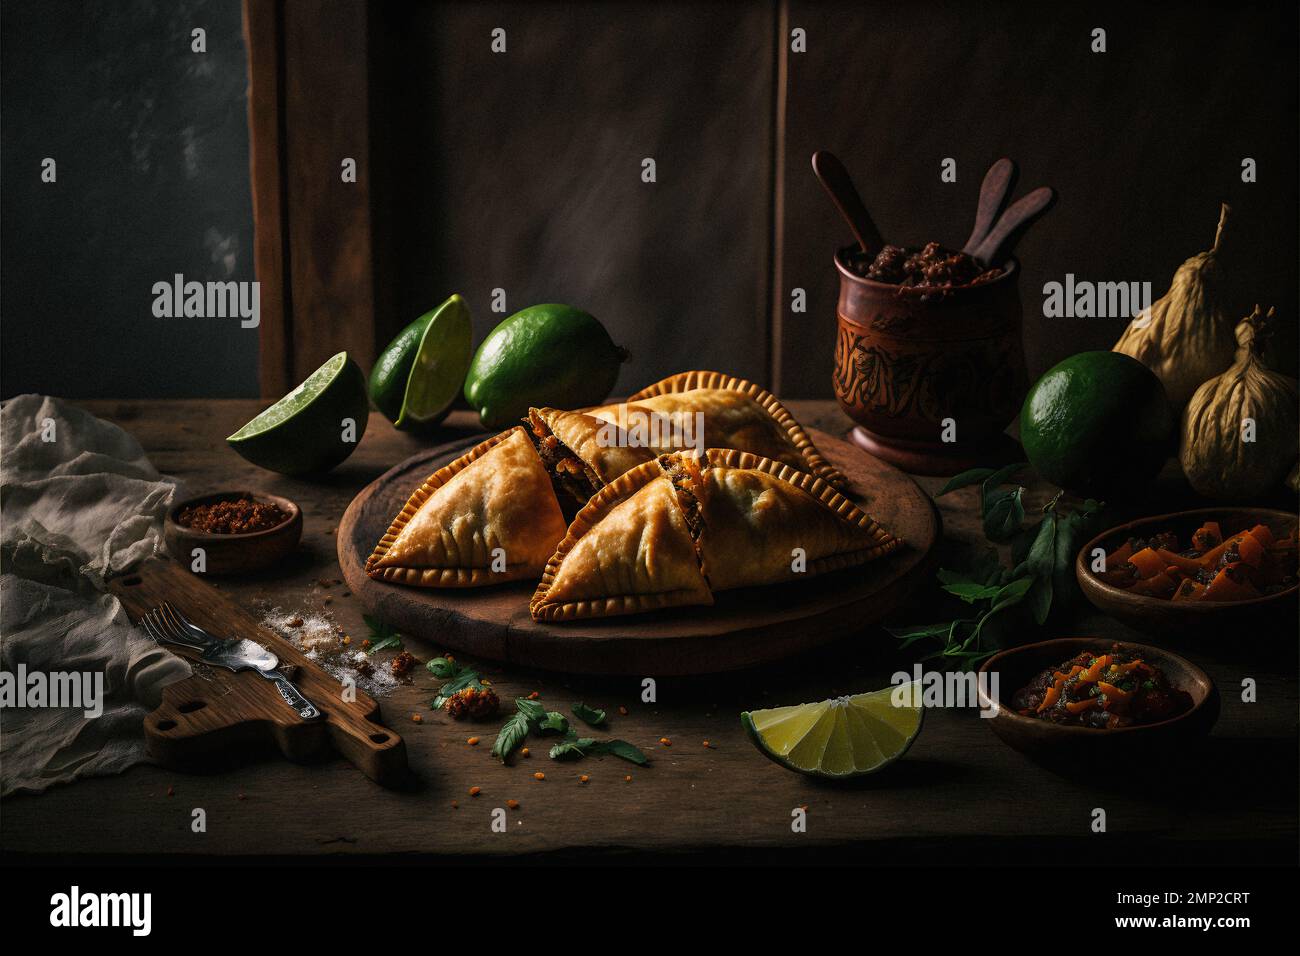 Concedetevi i ricchi sapori dell'America Latina con la nostra collezione di fotografia enogastronomica Empanadas. Immagini appetitose mostrano cibo tradizionale, di strada, Foto Stock